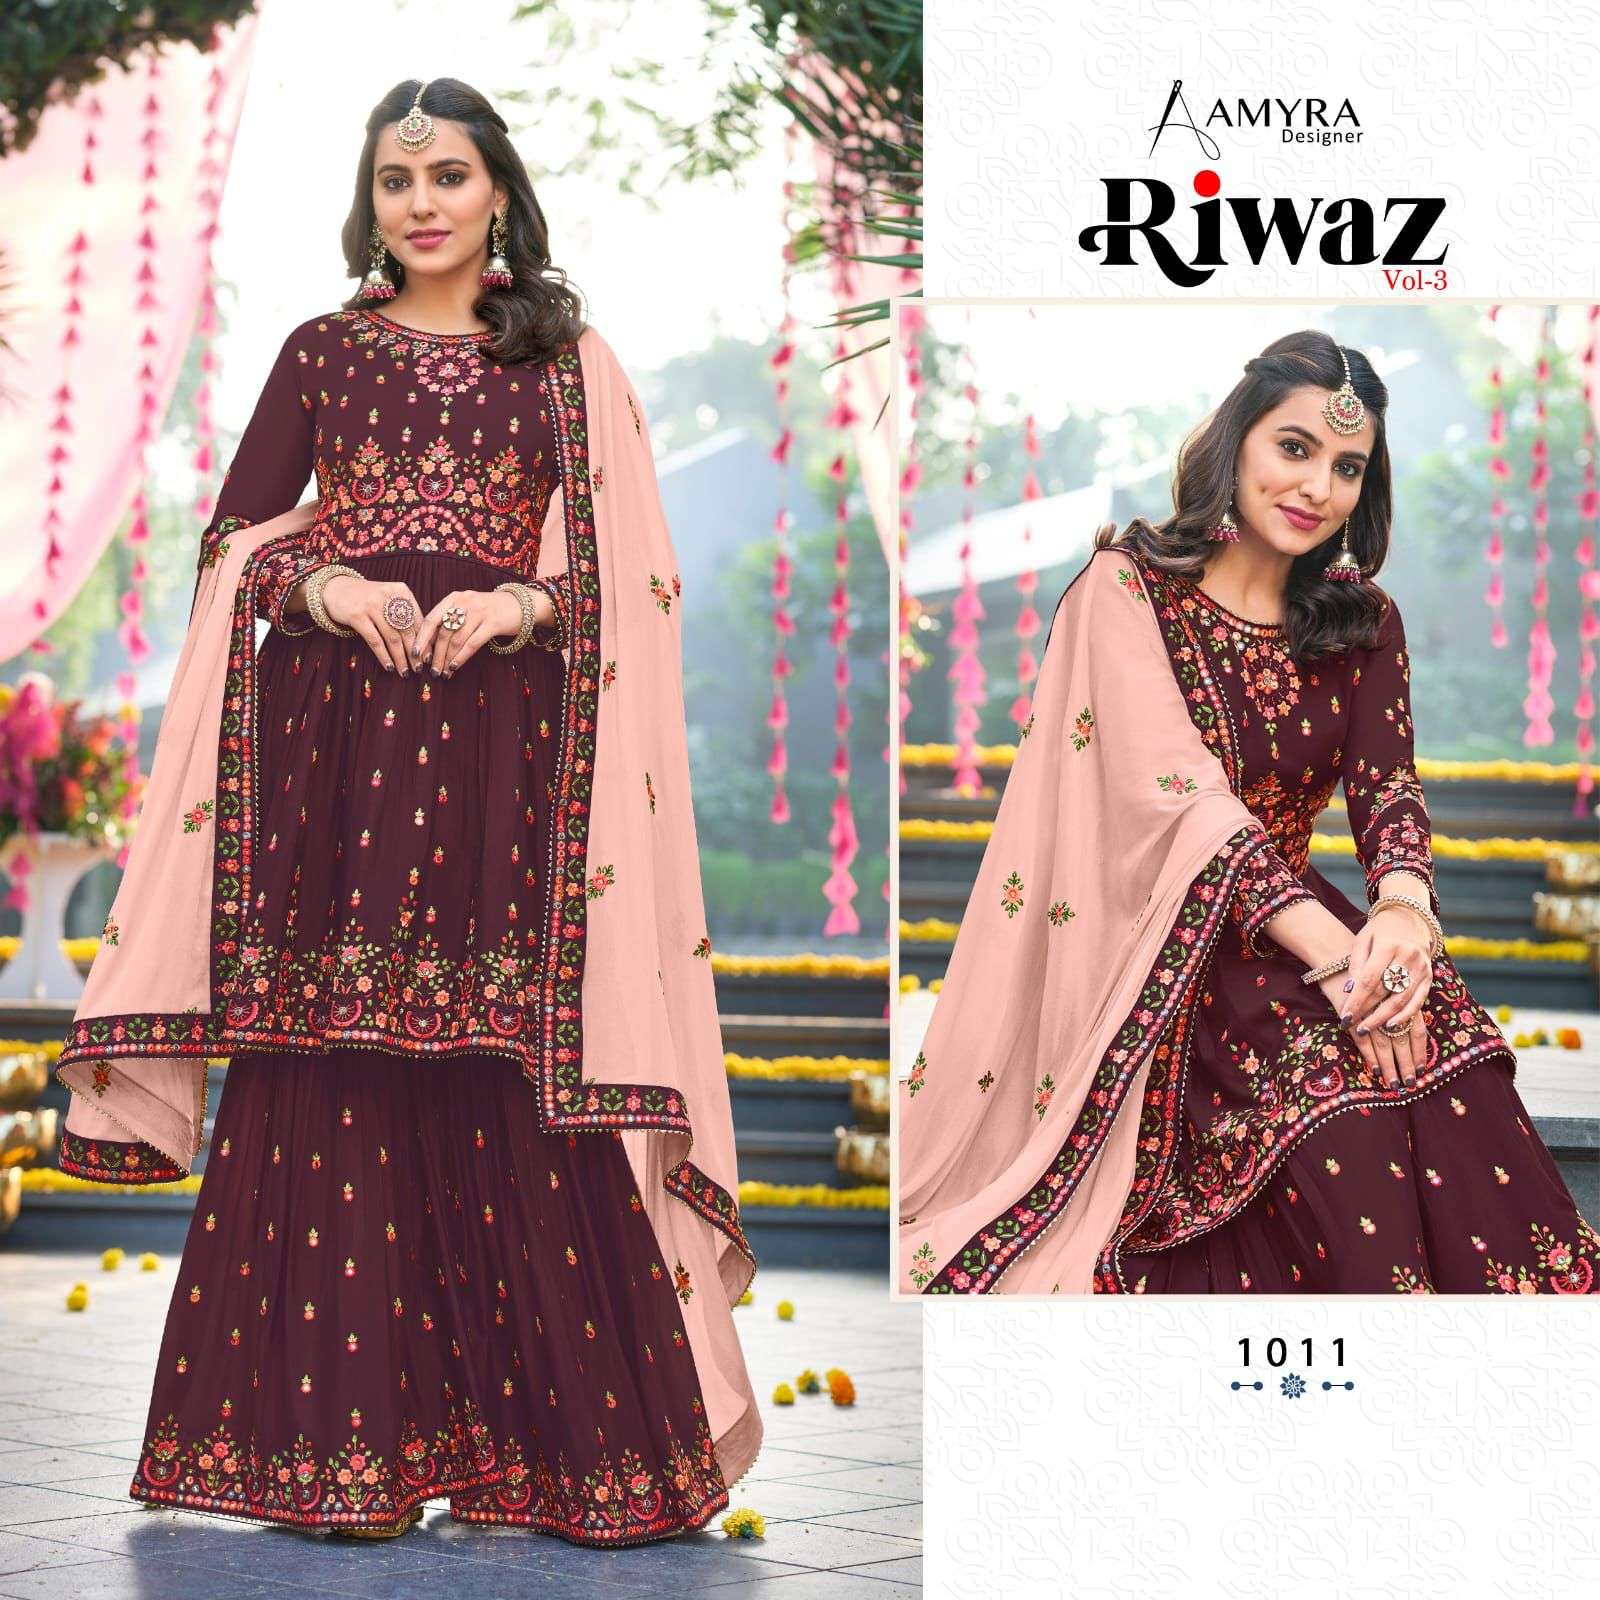 Riwaz Vol 3 By Amyra Designer Designer Wholesale Online Salwar Suit Set